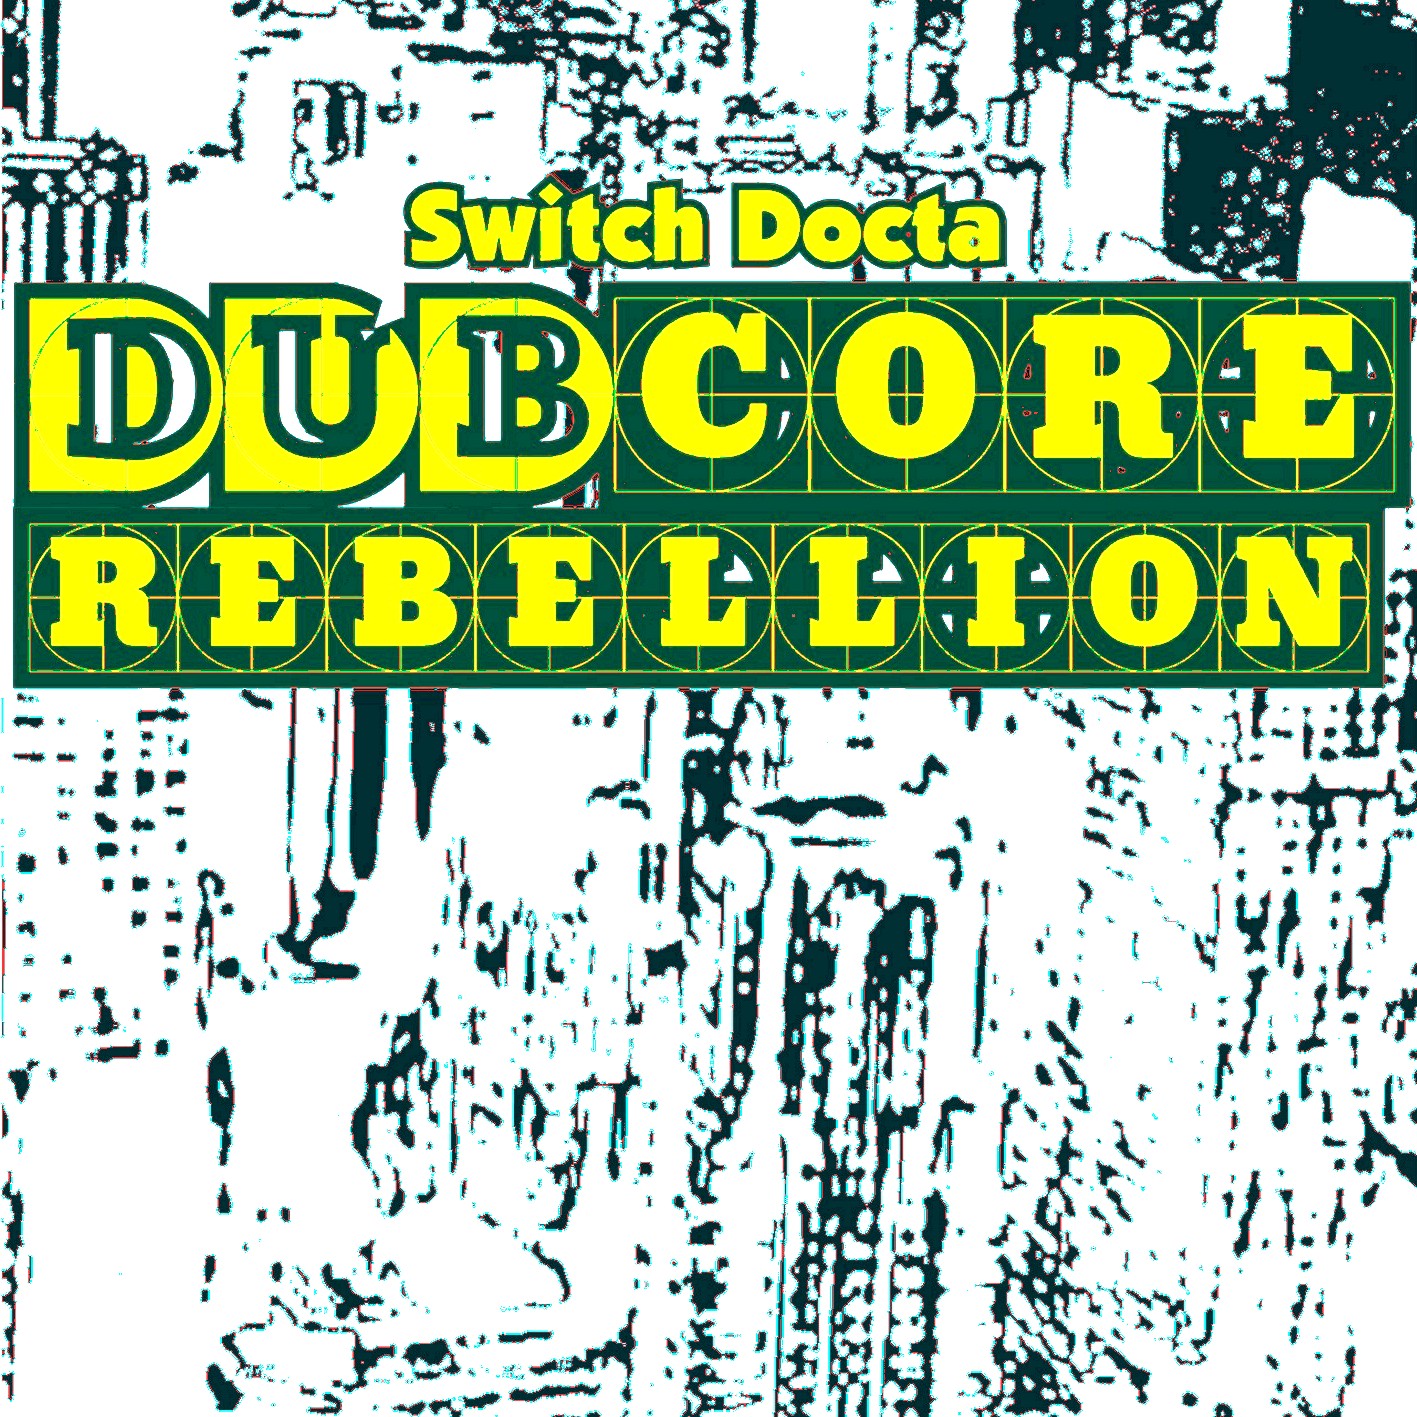 Dubcore Rebellion